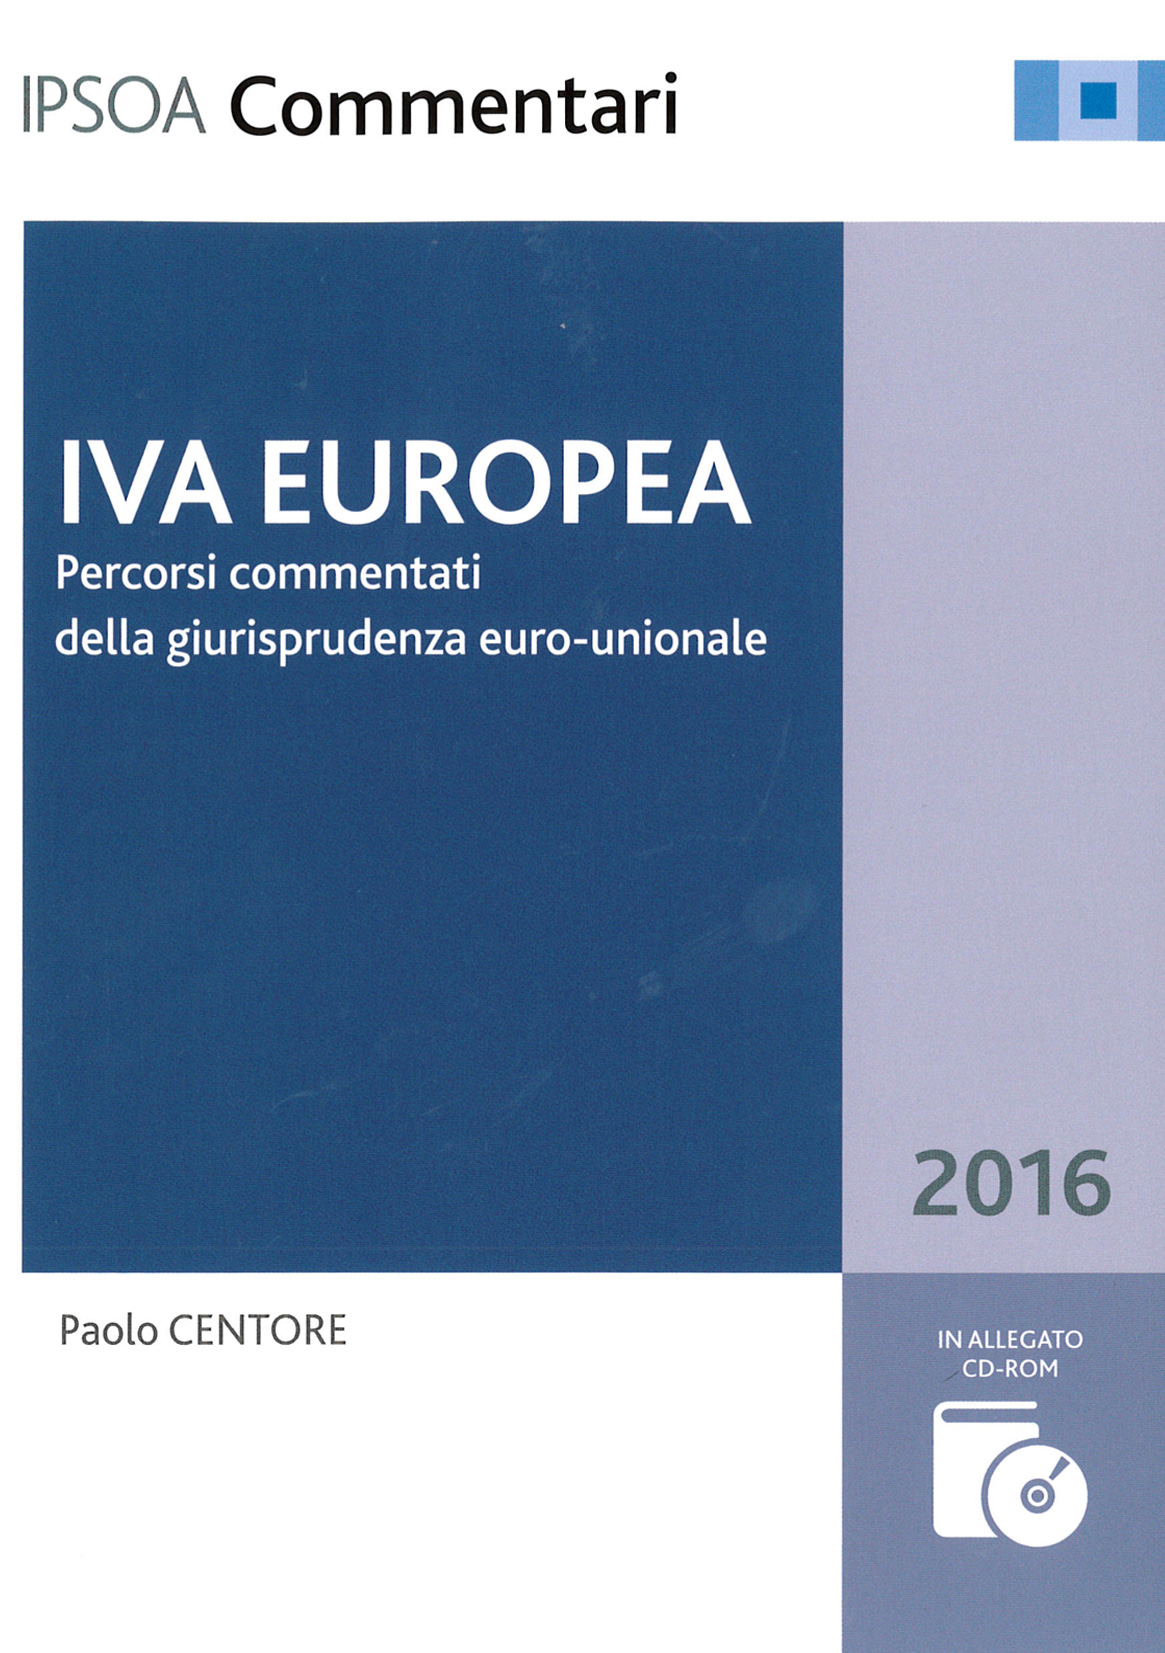 IVA Europea 2016